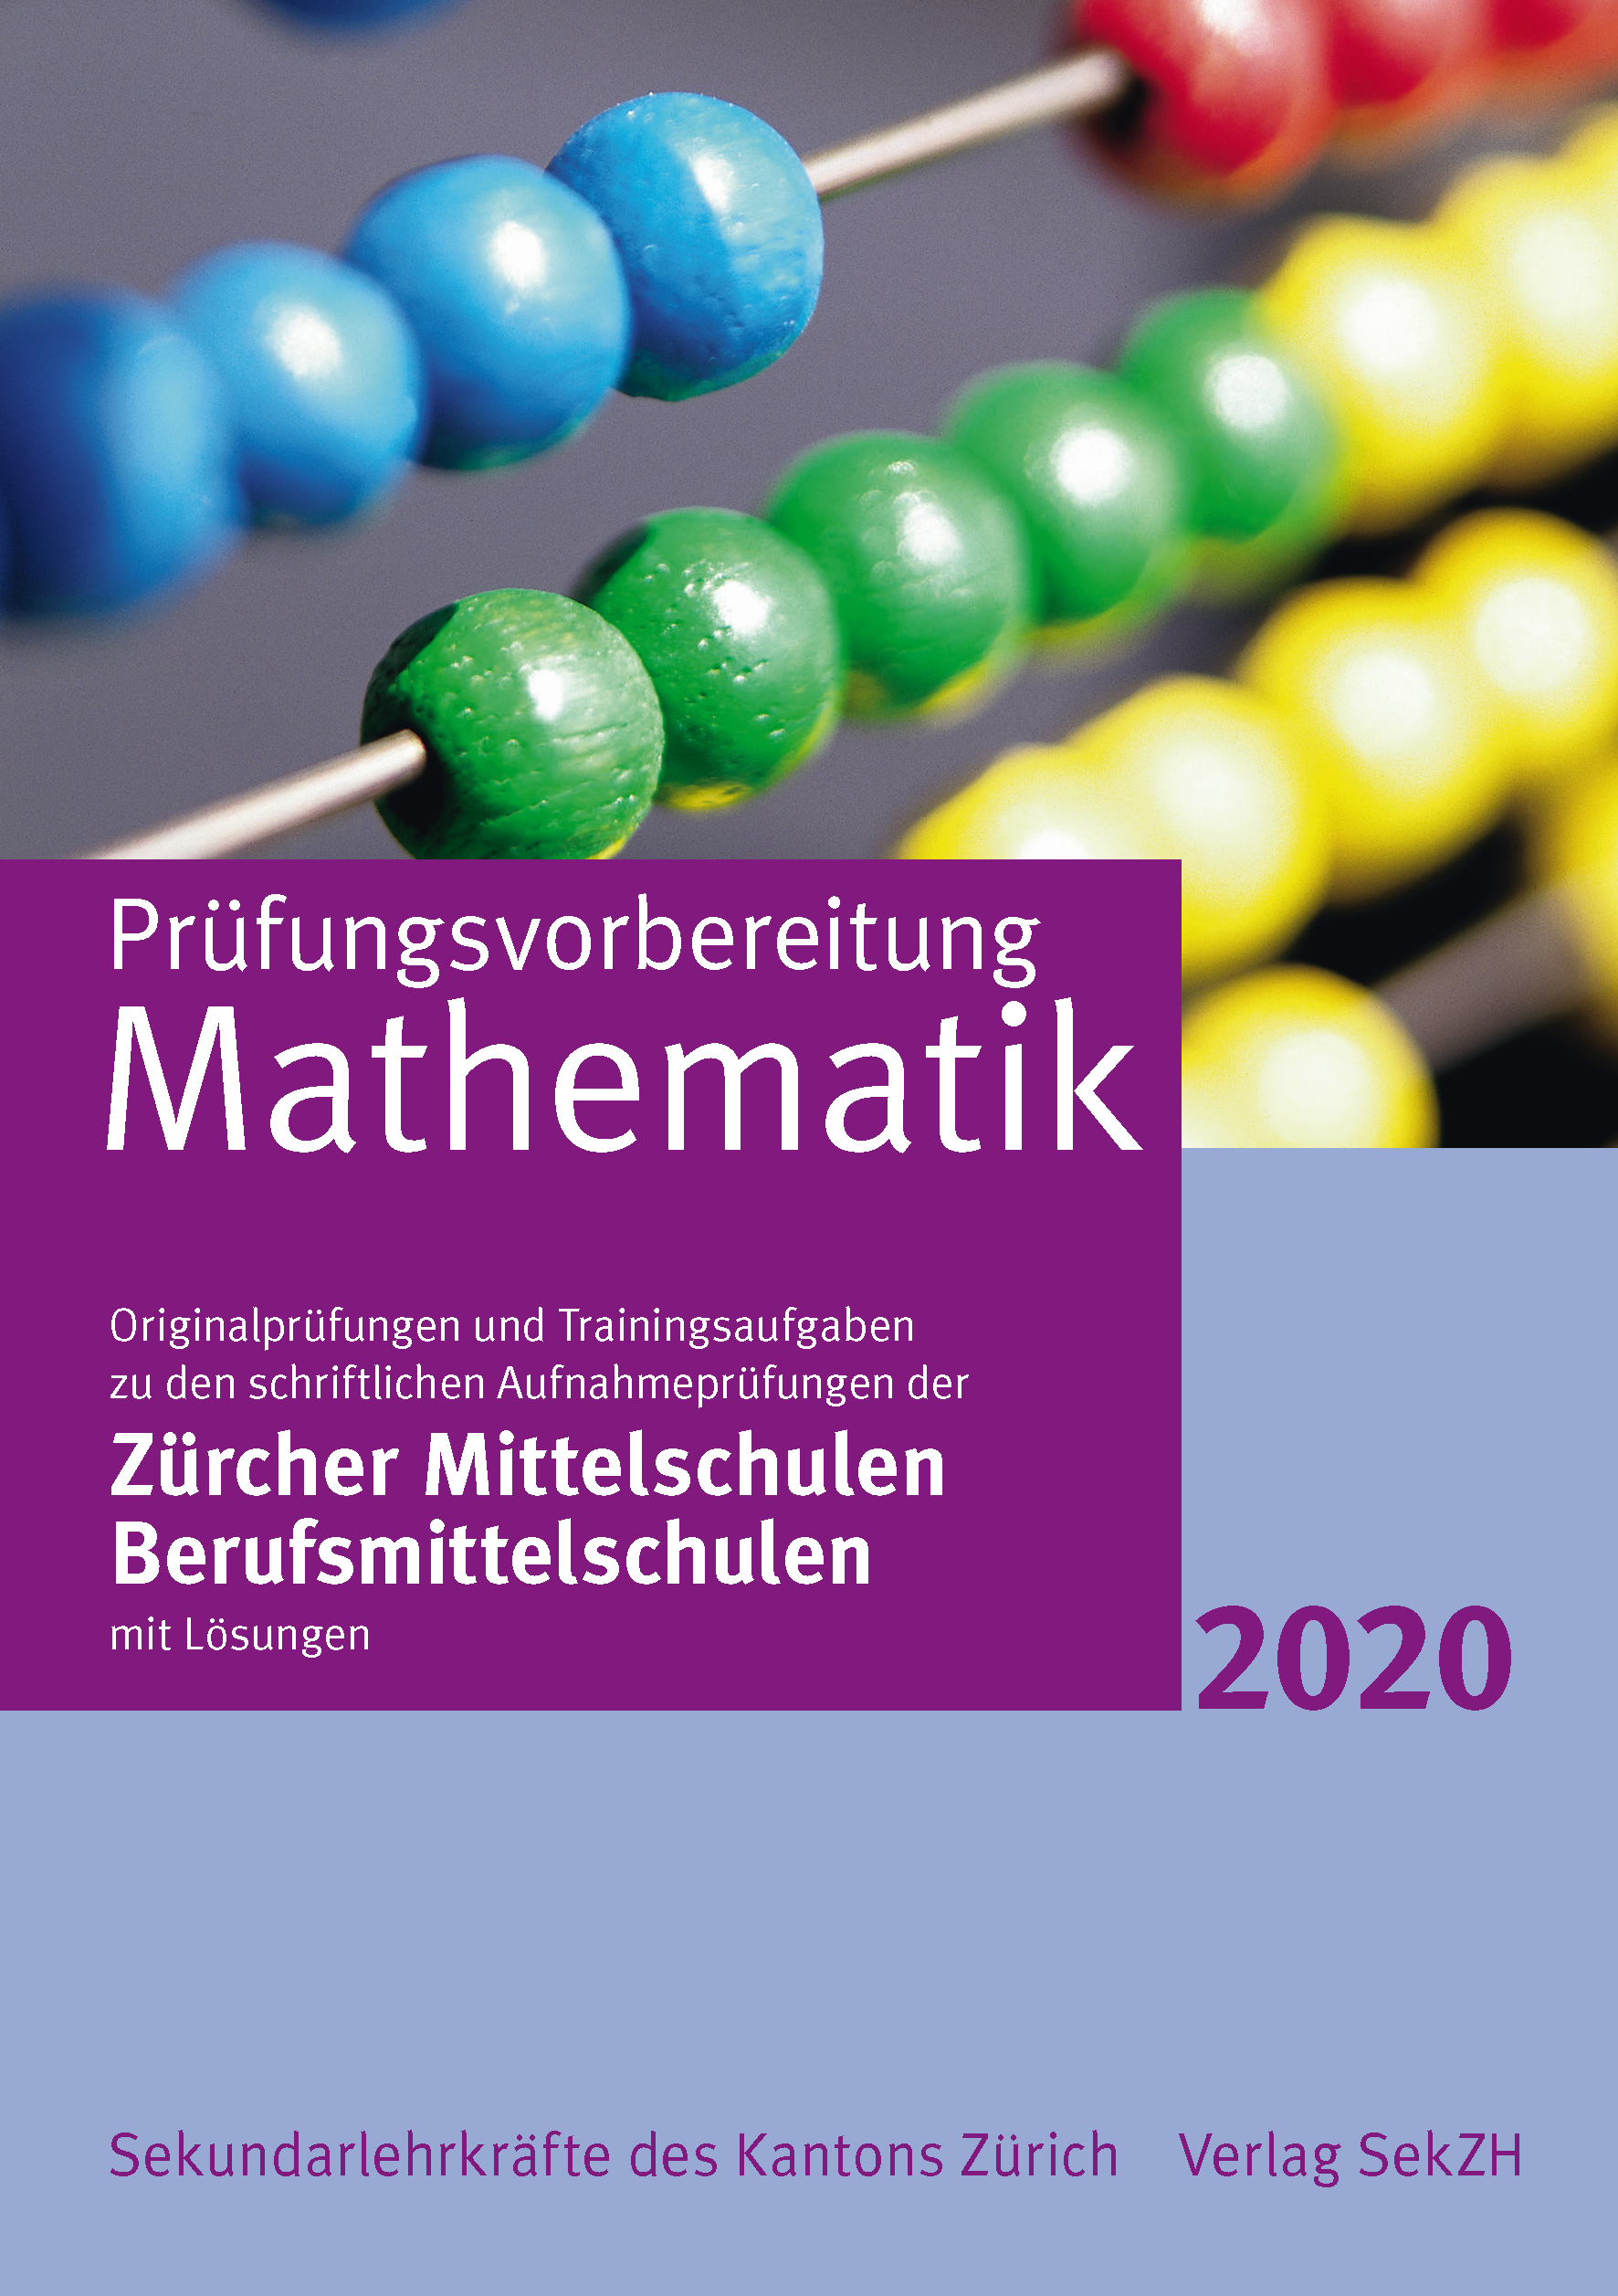 P802 - Prüfungsvorbereitung Mathematik 2020